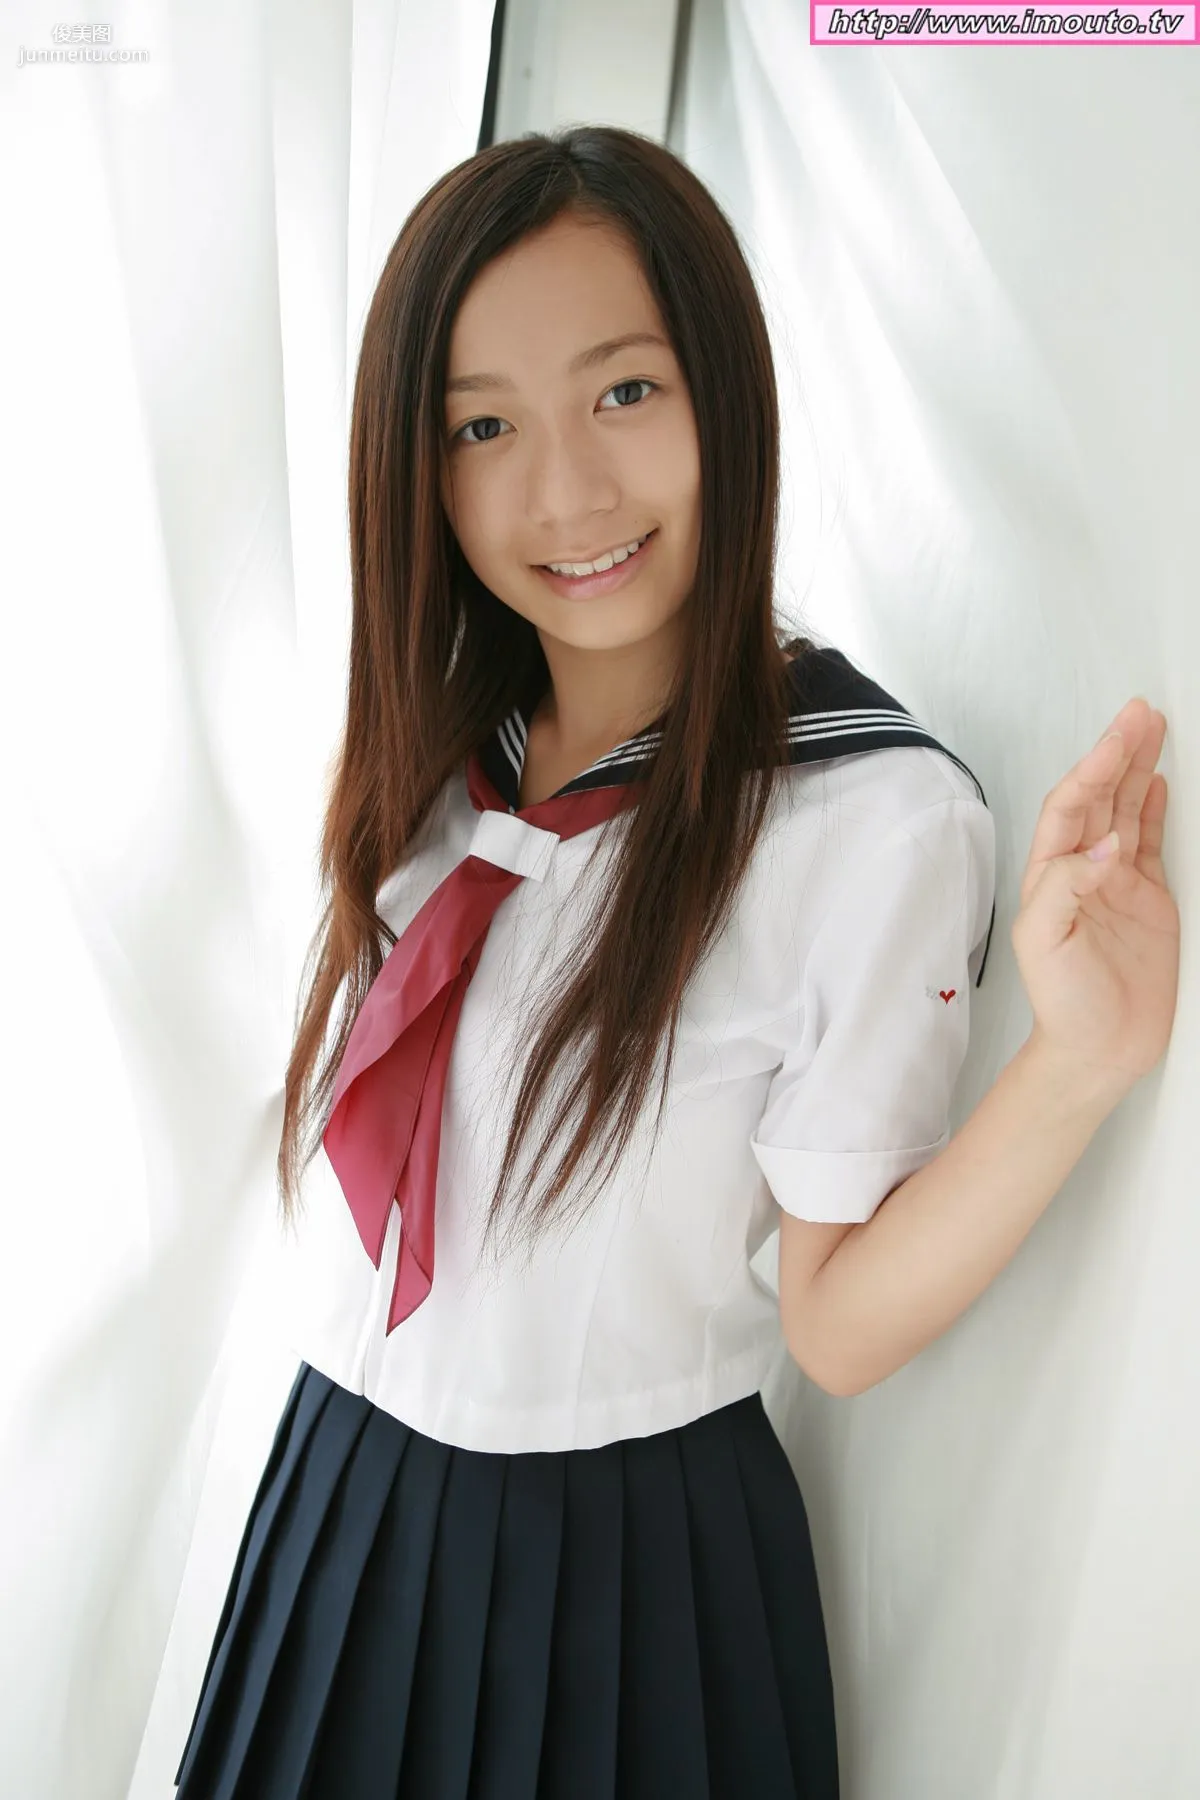 有川瑞希 Mizuki Arikawa ~ doll arikawa mizuki03 [Imouto.tv] 写真集28